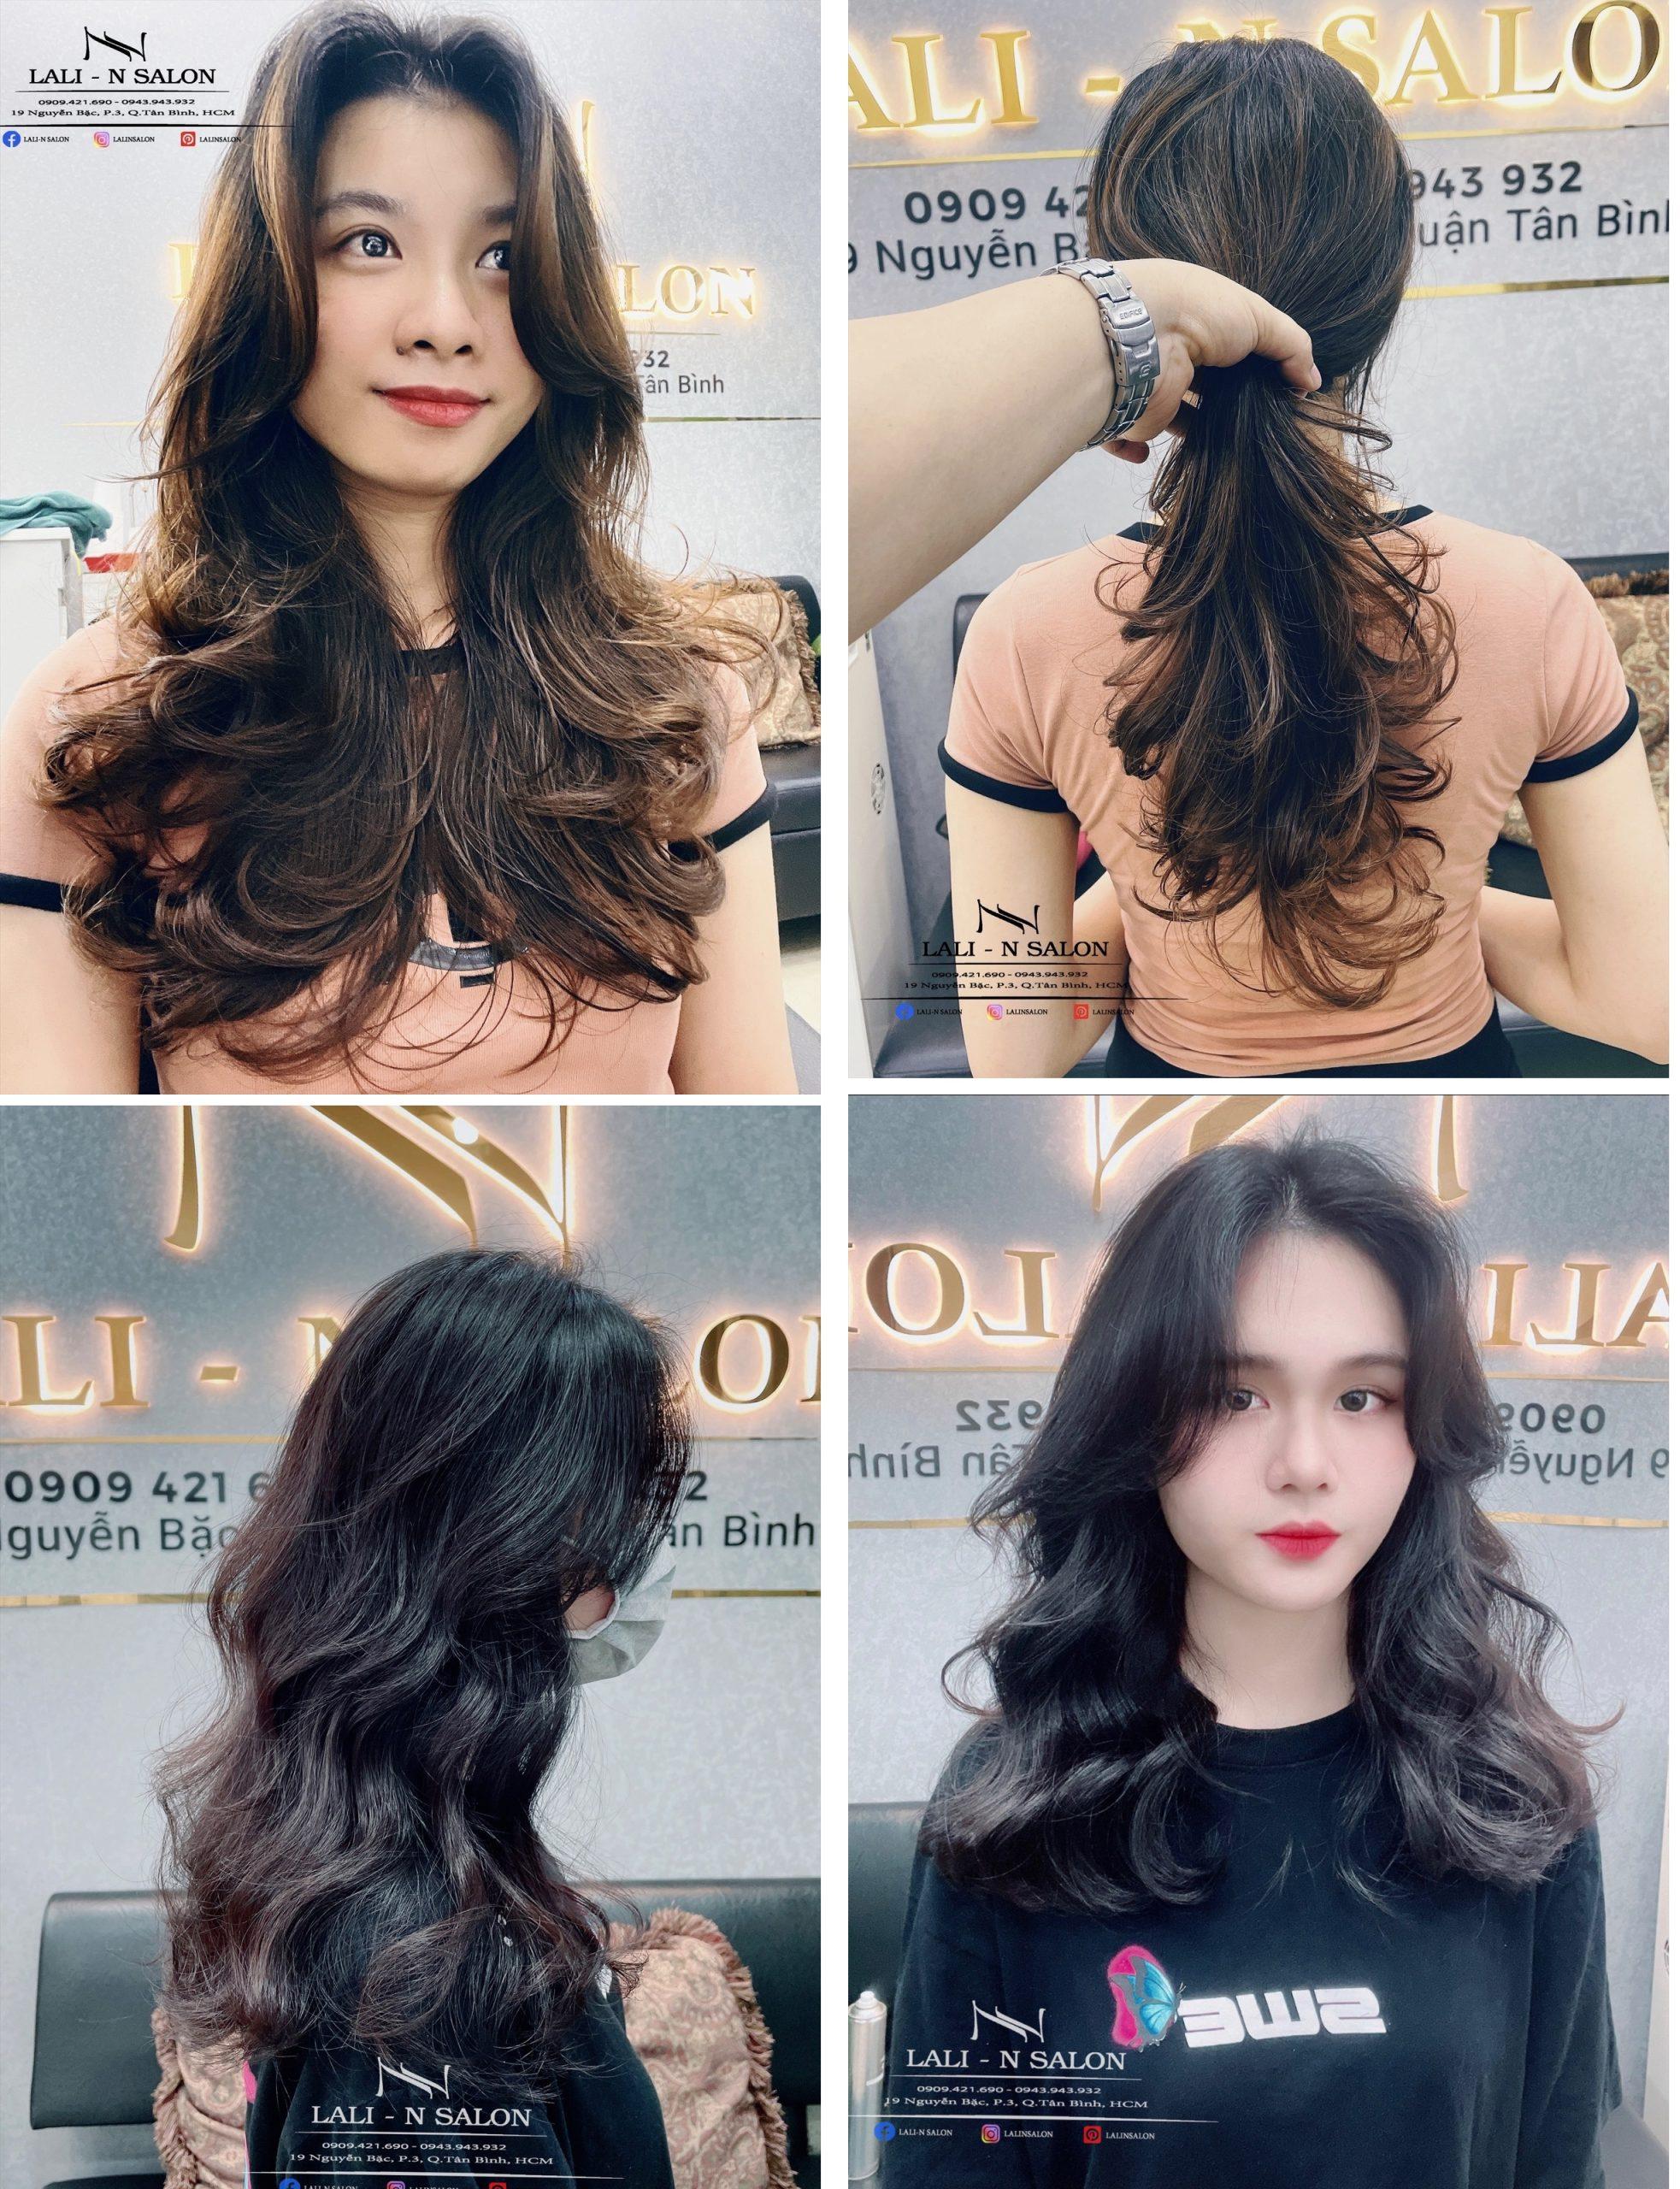 Hãy đến với salon uốn tóc Hàn Quốc để trải nghiệm một cách uốn tóc chuyên nghiệp và đẳng cấp nhất. Chúng tôi sử dụng những sản phẩm chất lượng hàng đầu và kỹ thuật hiện đại để mang đến cho bạn một mái tóc tuyệt đẹp và sáng vàng. Hãy để chúng tôi giúp bạn thay đổi style tóc đỉnh cao.